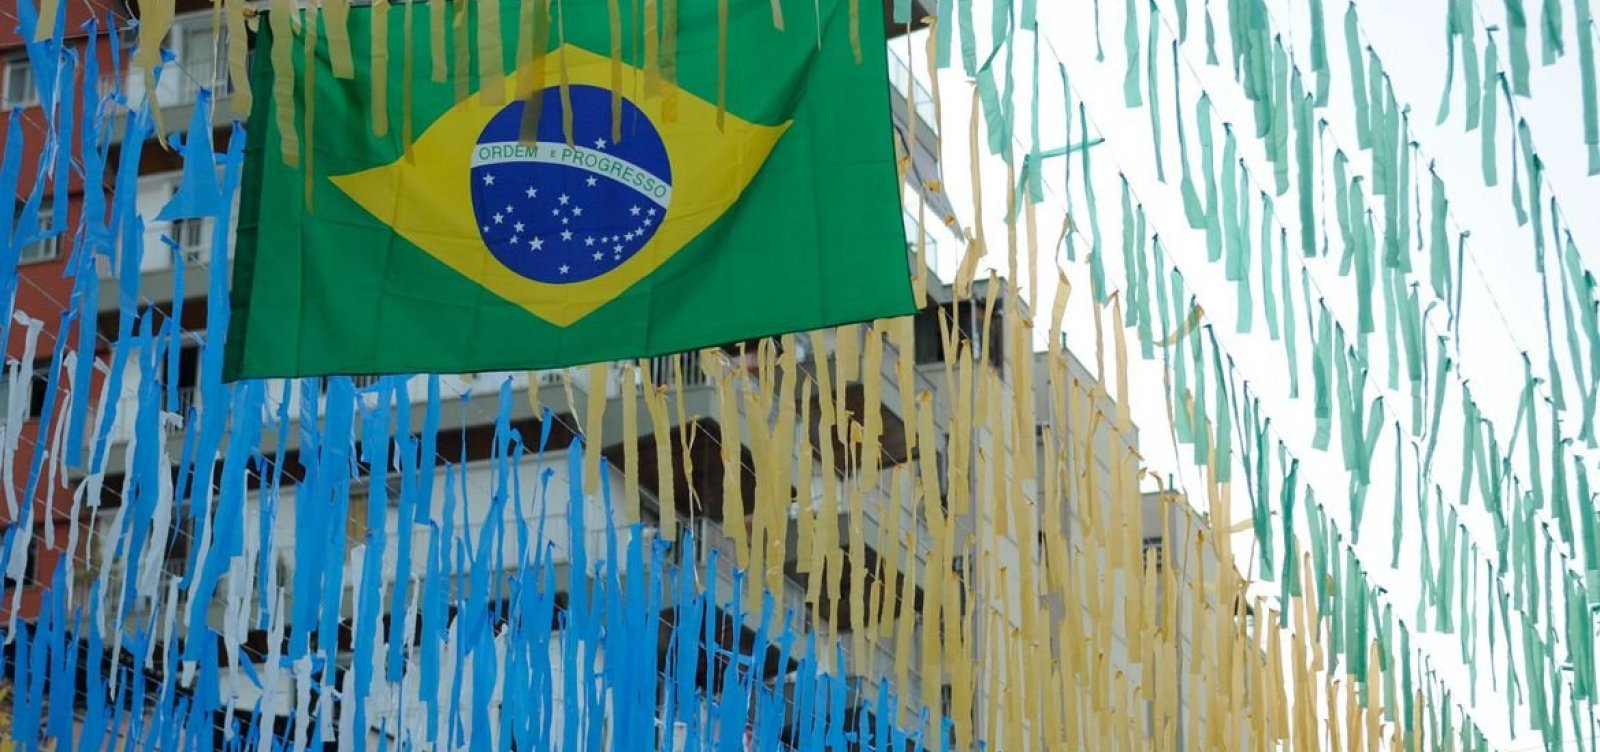 Copa do Mundo: Bancos oficializam horário especial de funcionamento nos dias de jogos do Brasil